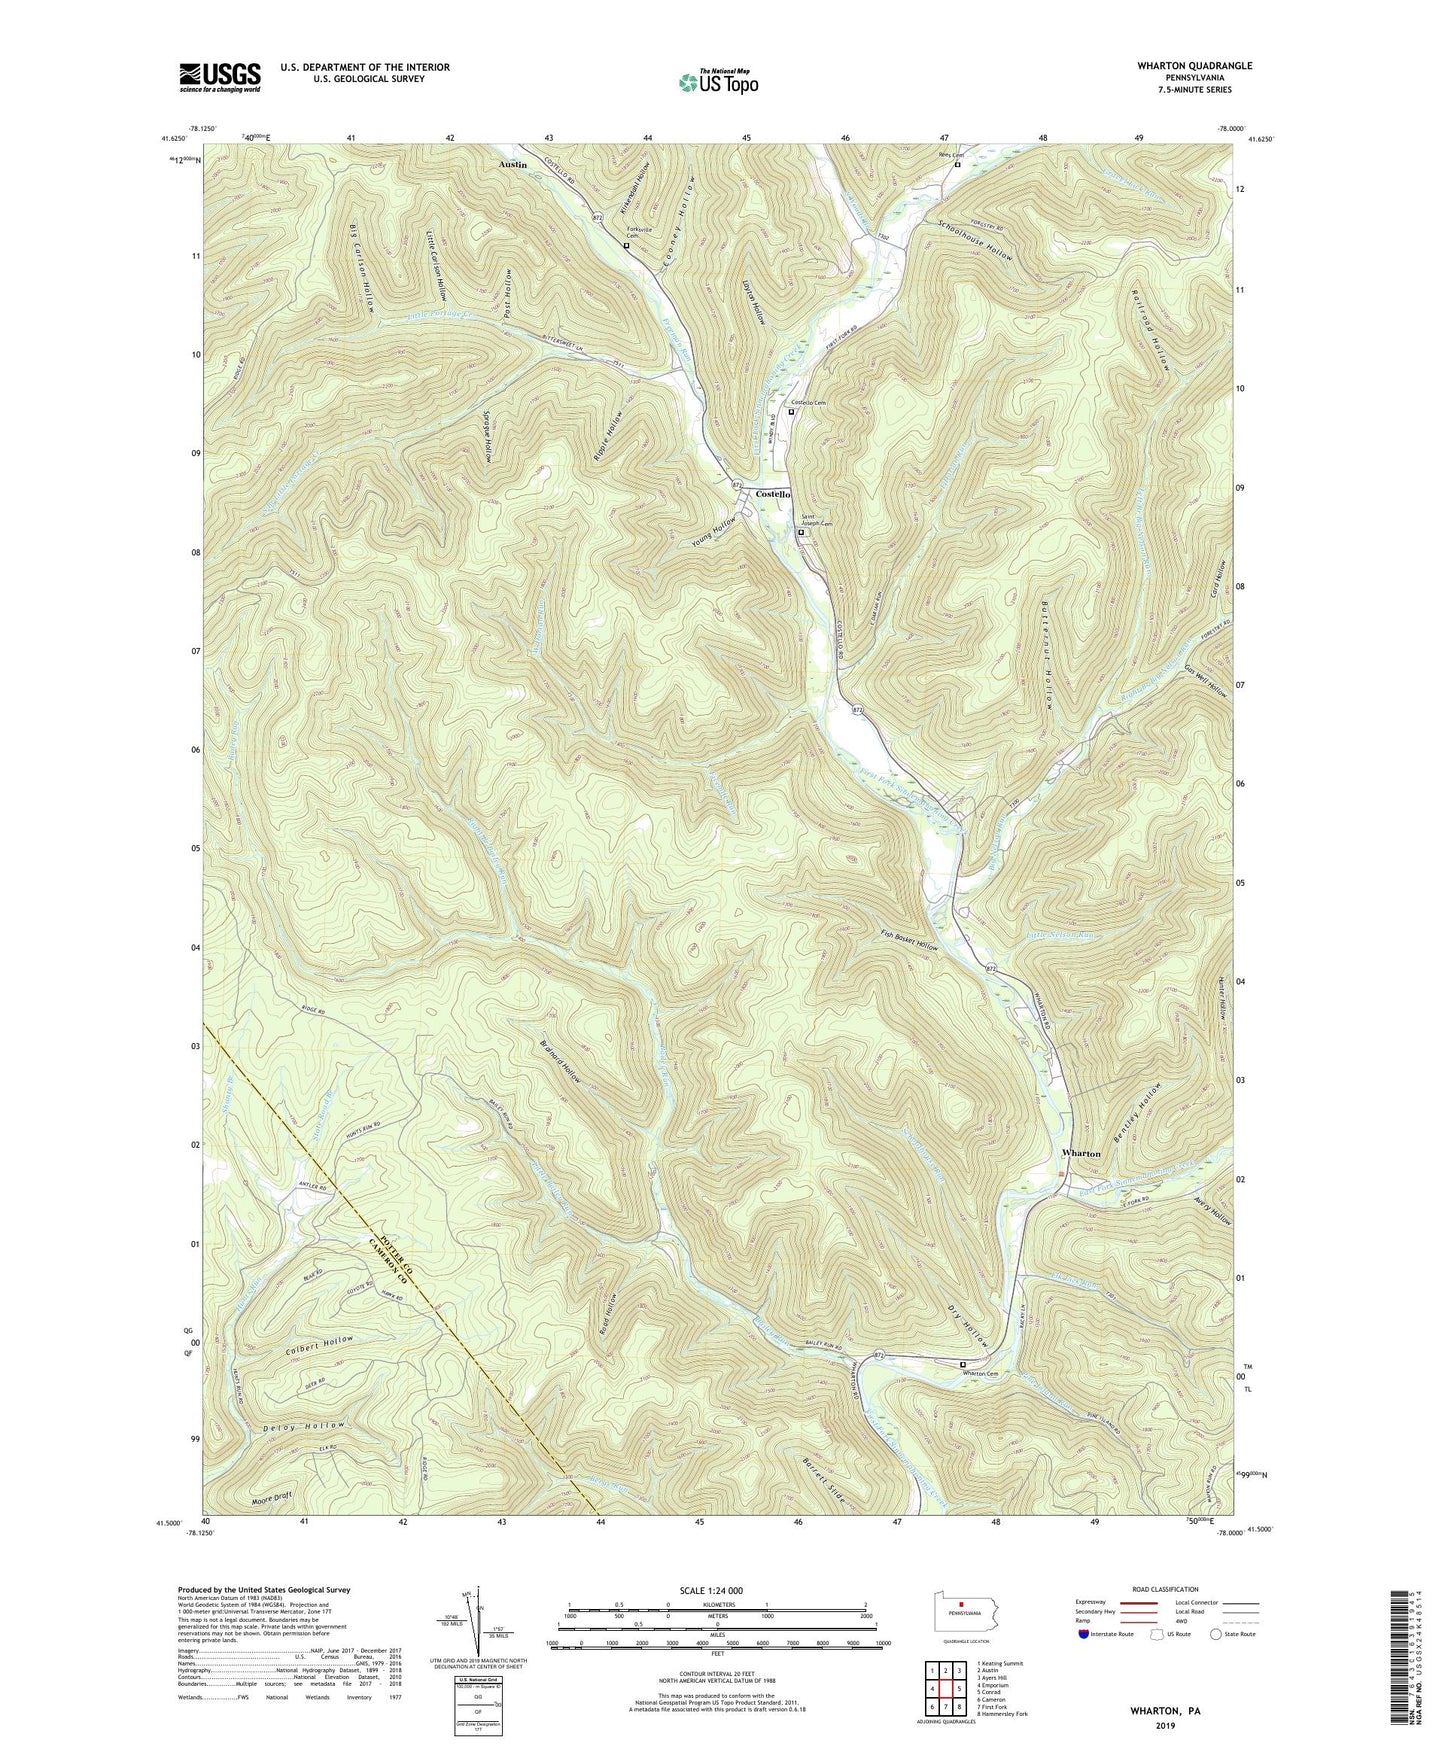 Wharton Pennsylvania US Topo Map Image